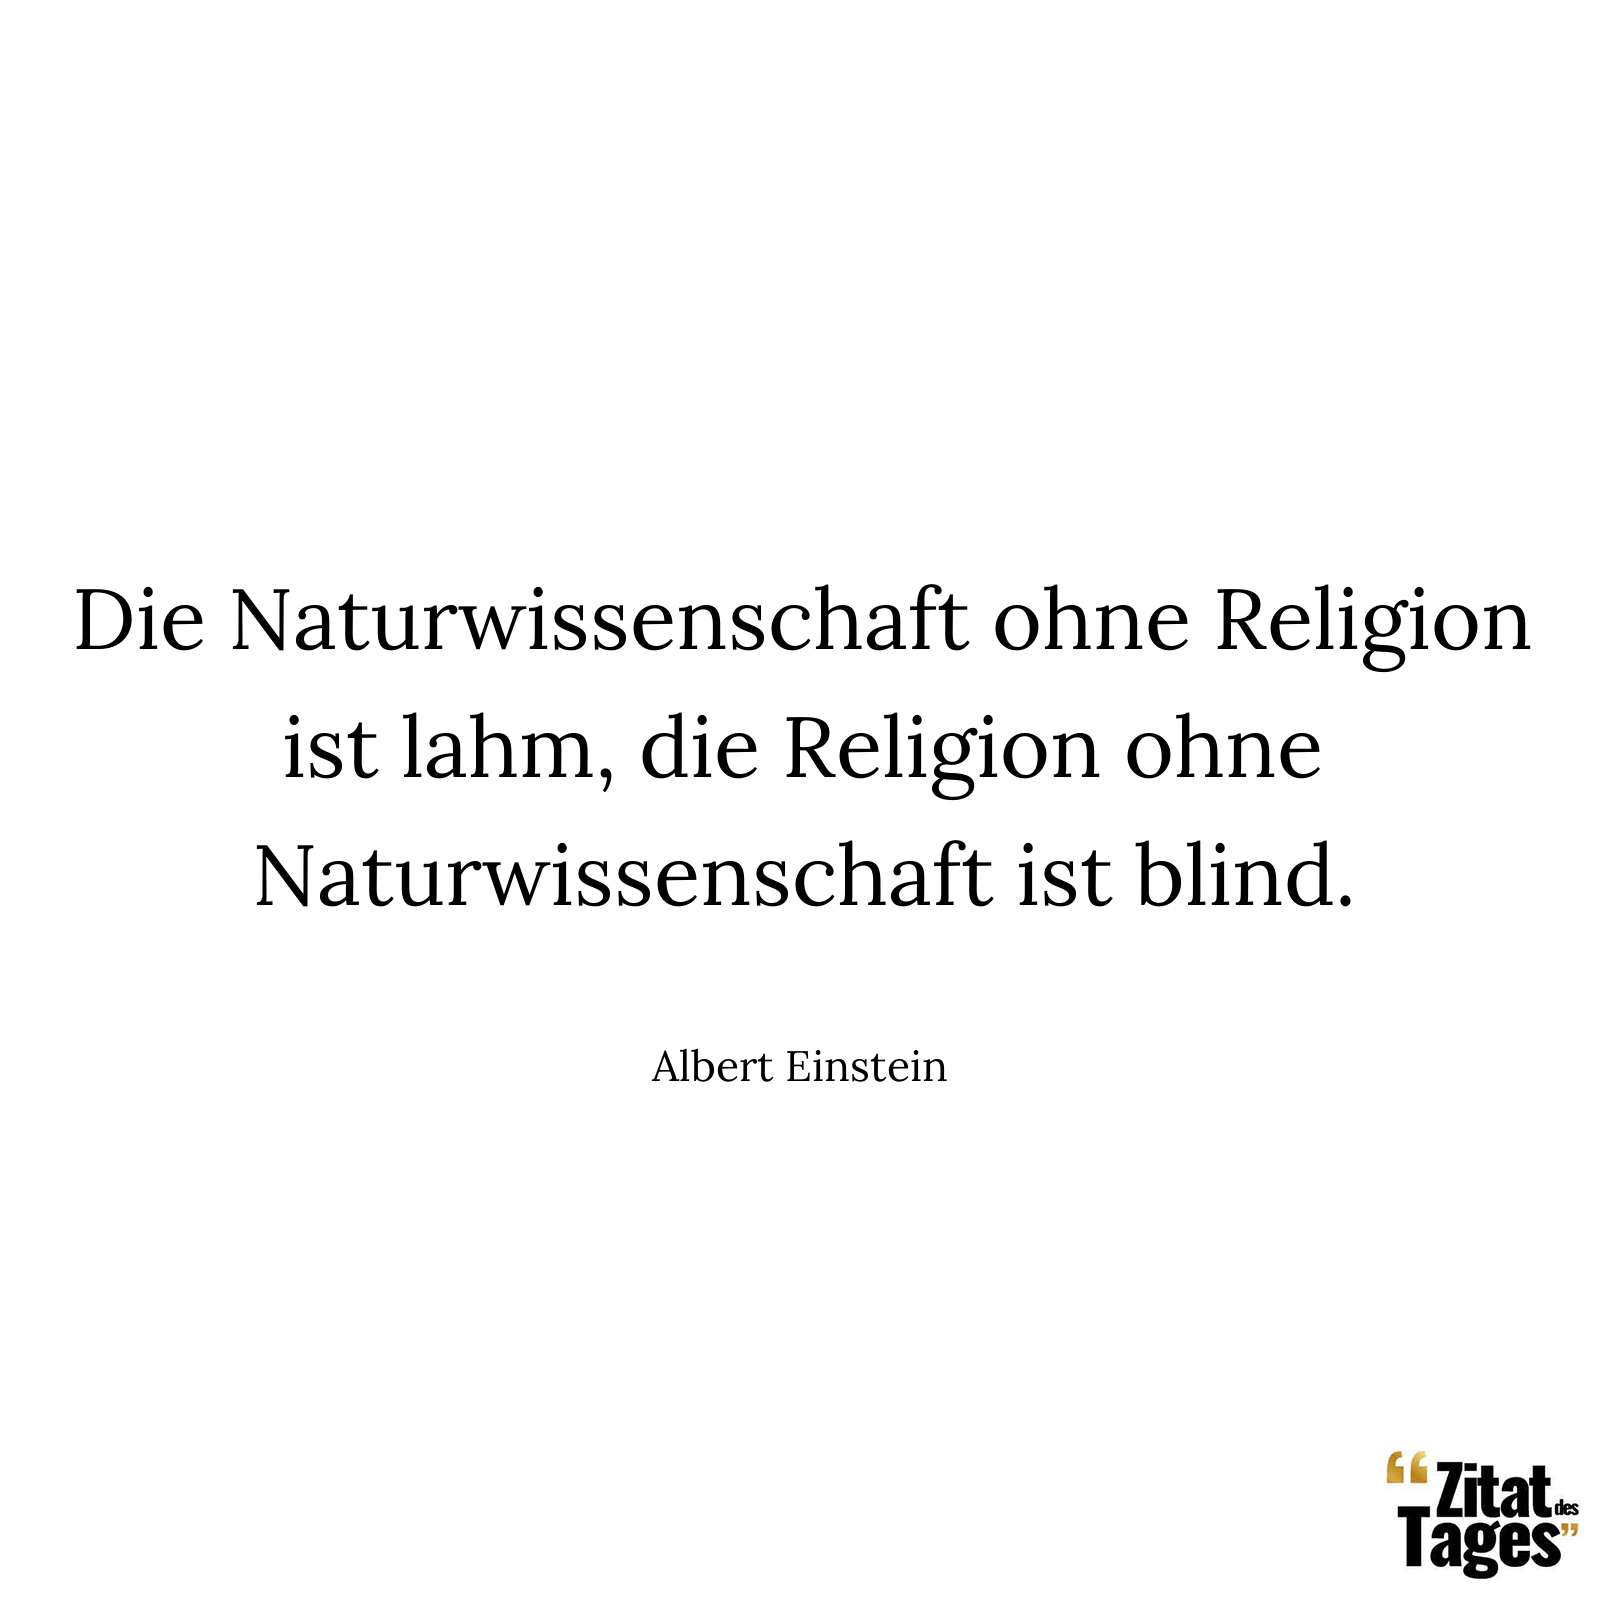 Die Naturwissenschaft ohne Religion ist lahm, die Religion ohne Naturwissenschaft ist blind. - Albert Einstein